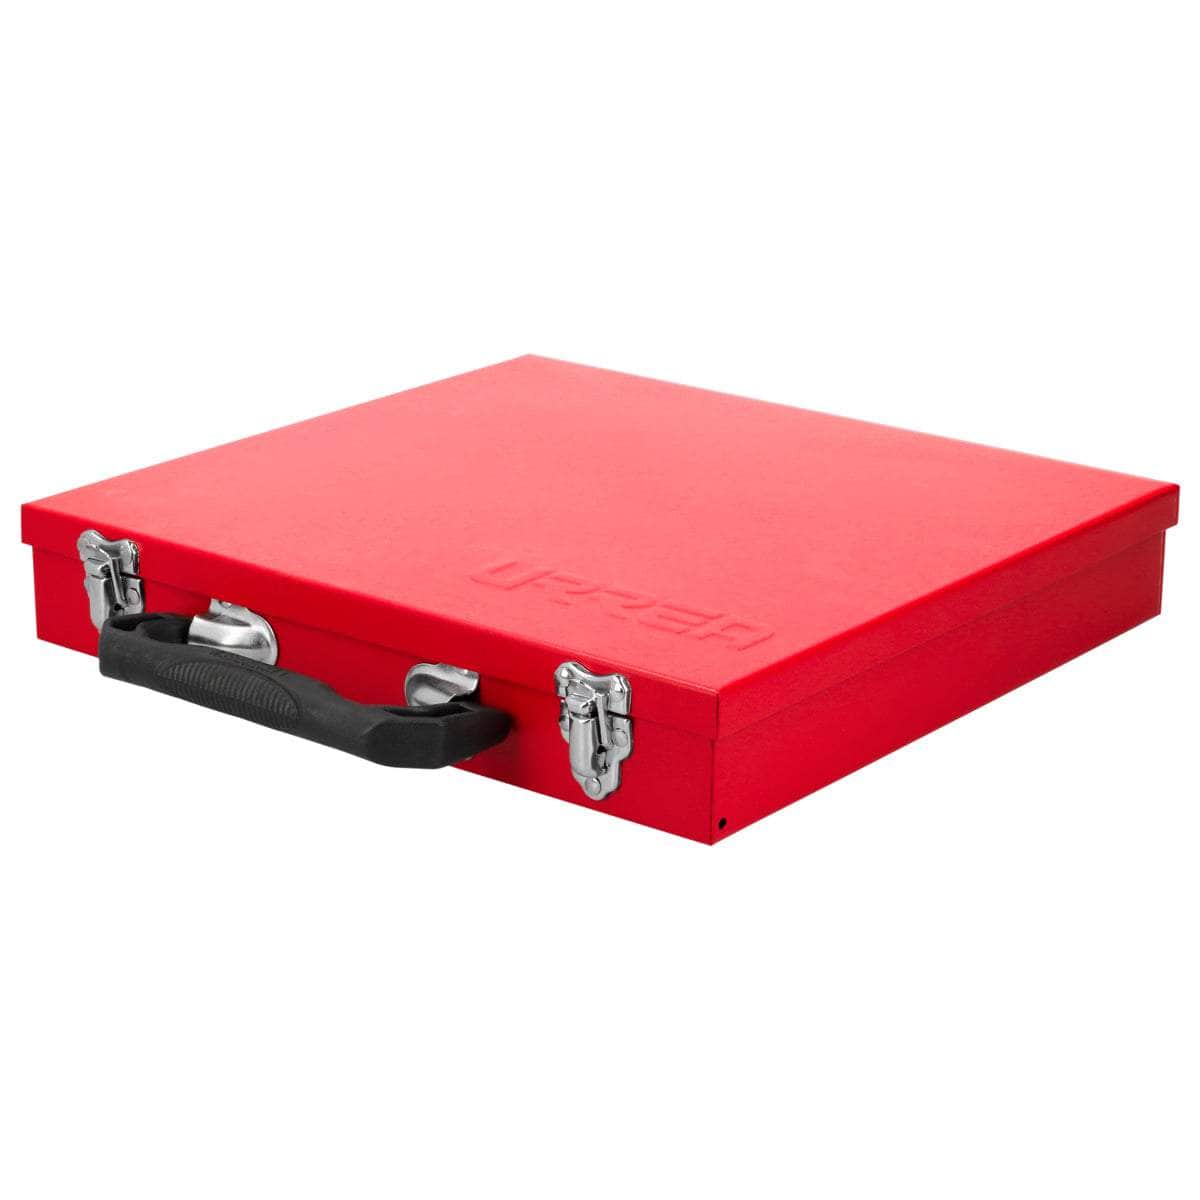 4019 Caja metálica usos múltiples roja 12" x 11" x 2", cod.4019 Urrea Urrea